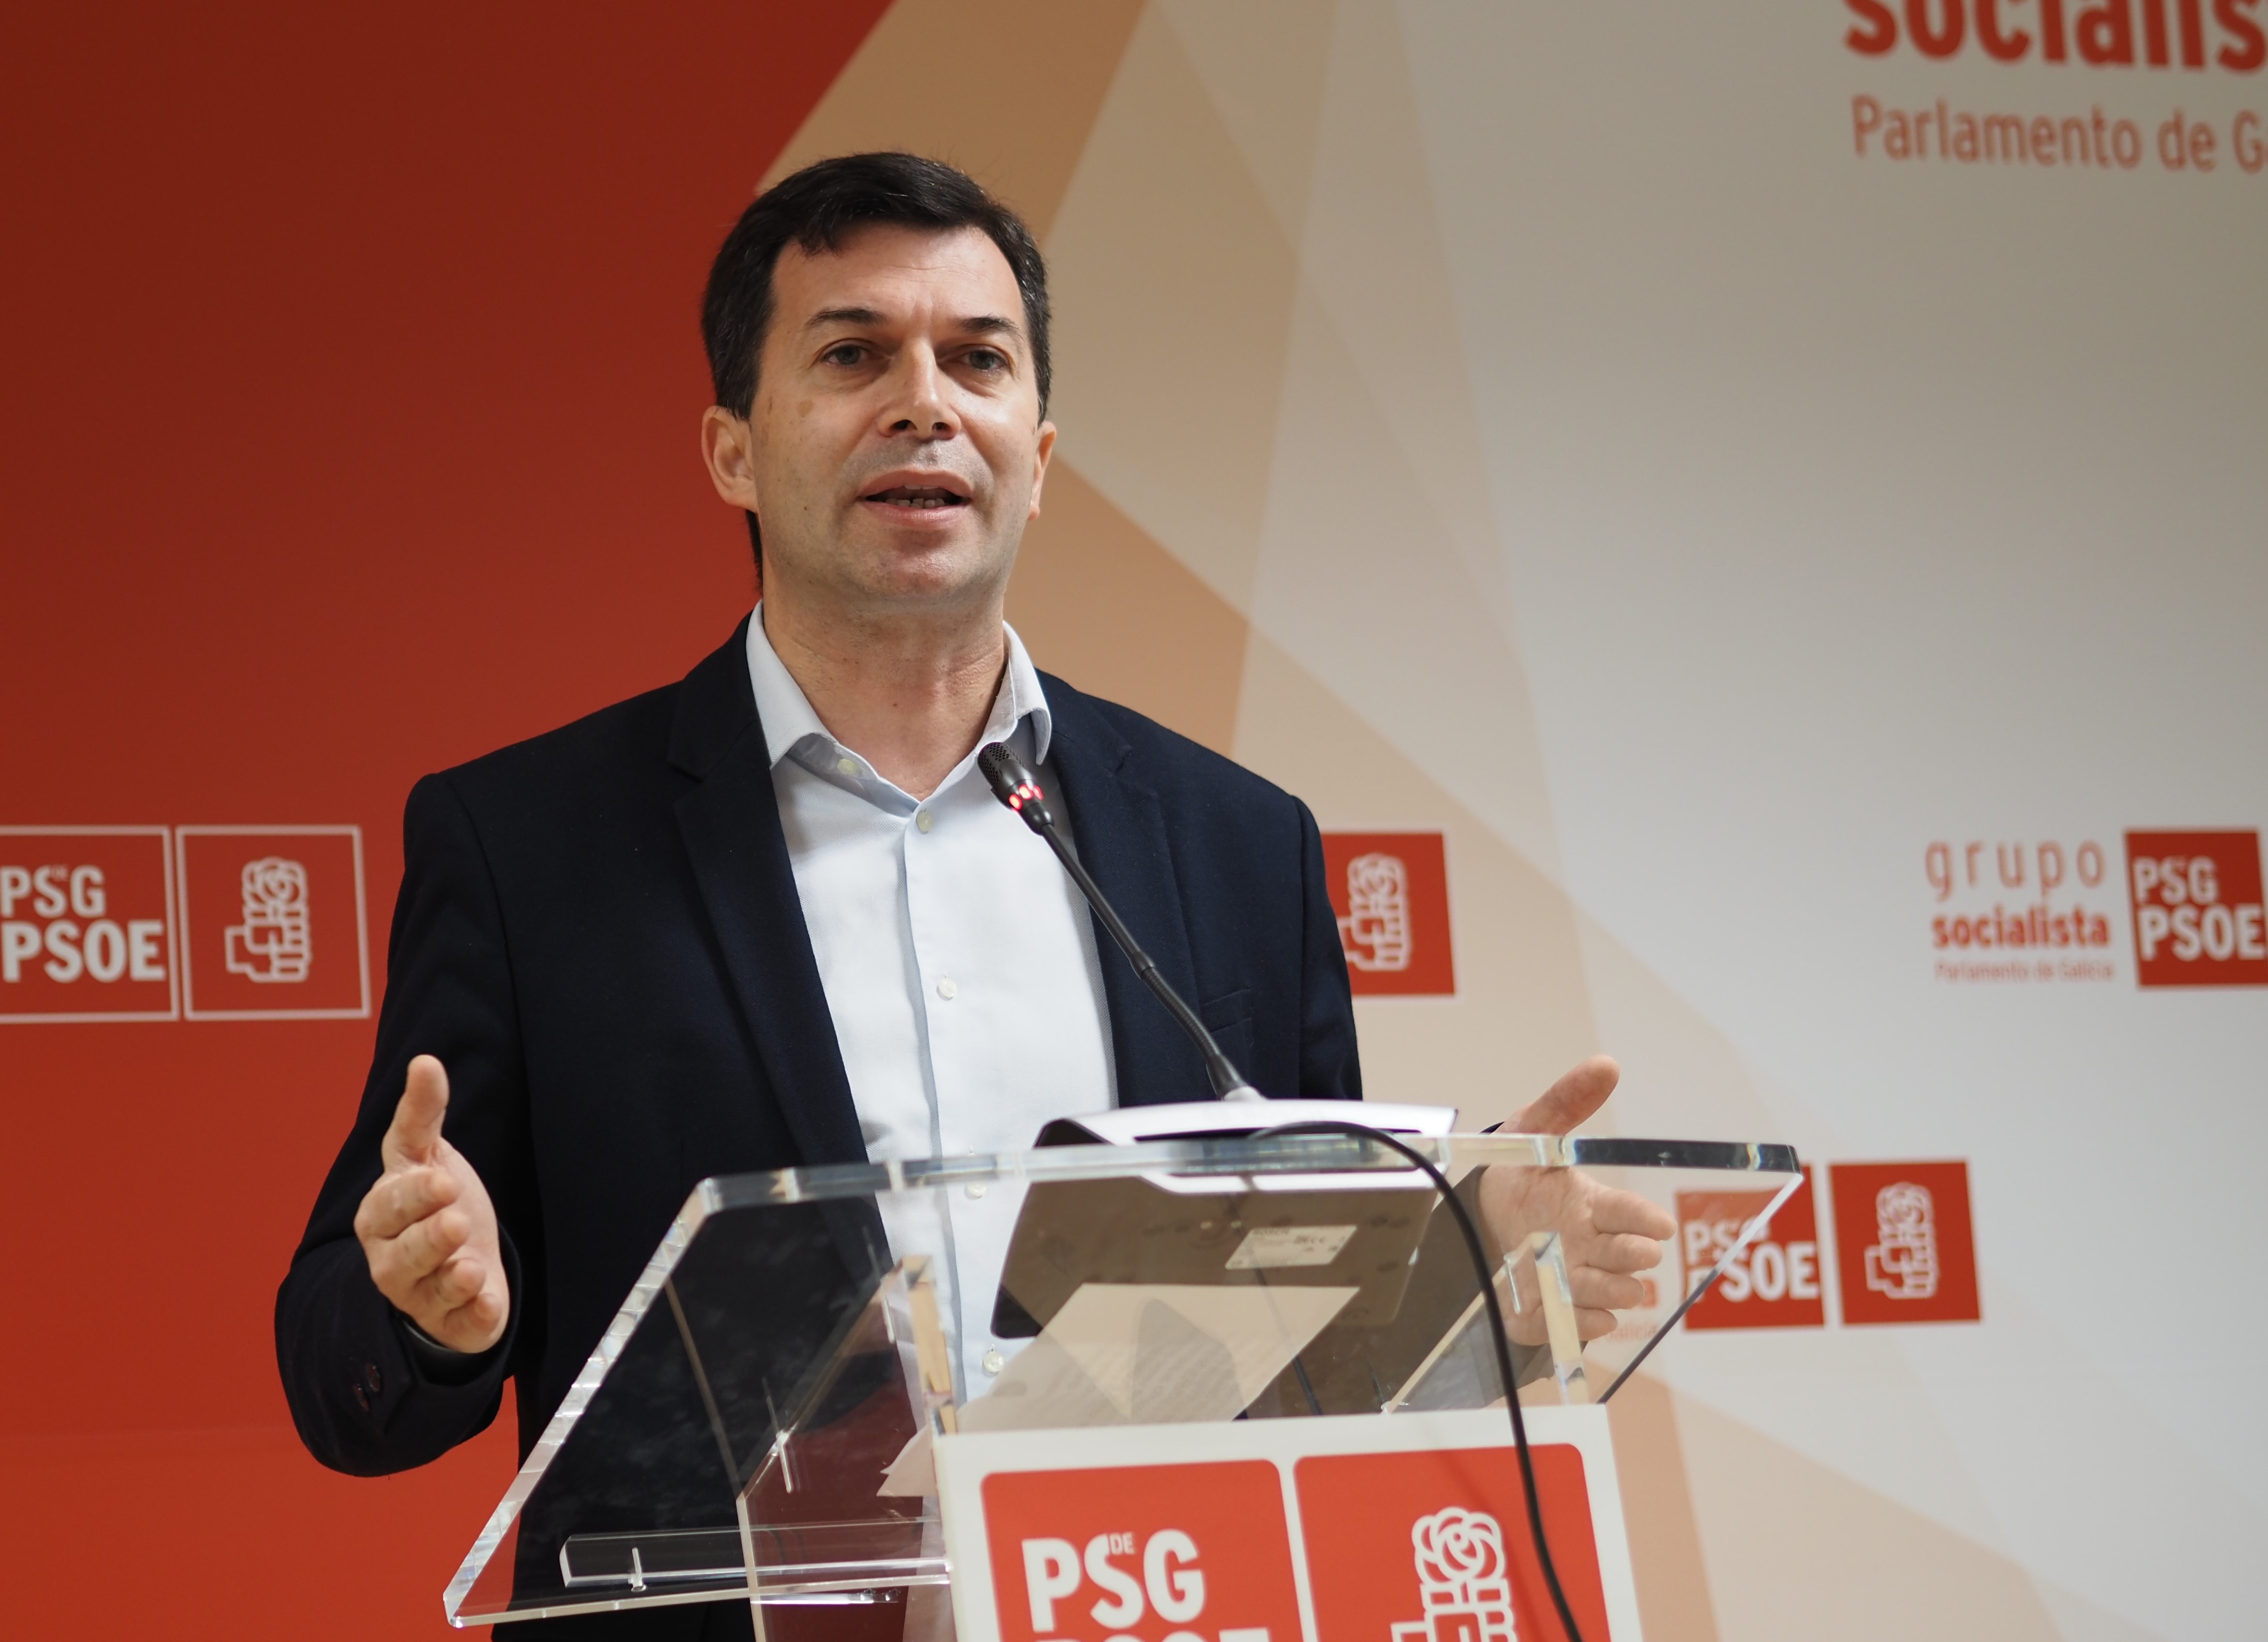 Gonzalo Caballero urxe a Feijóo a "liderar un gran acordo industrial" para afrontar a "nova revolución industrial" en Galicia